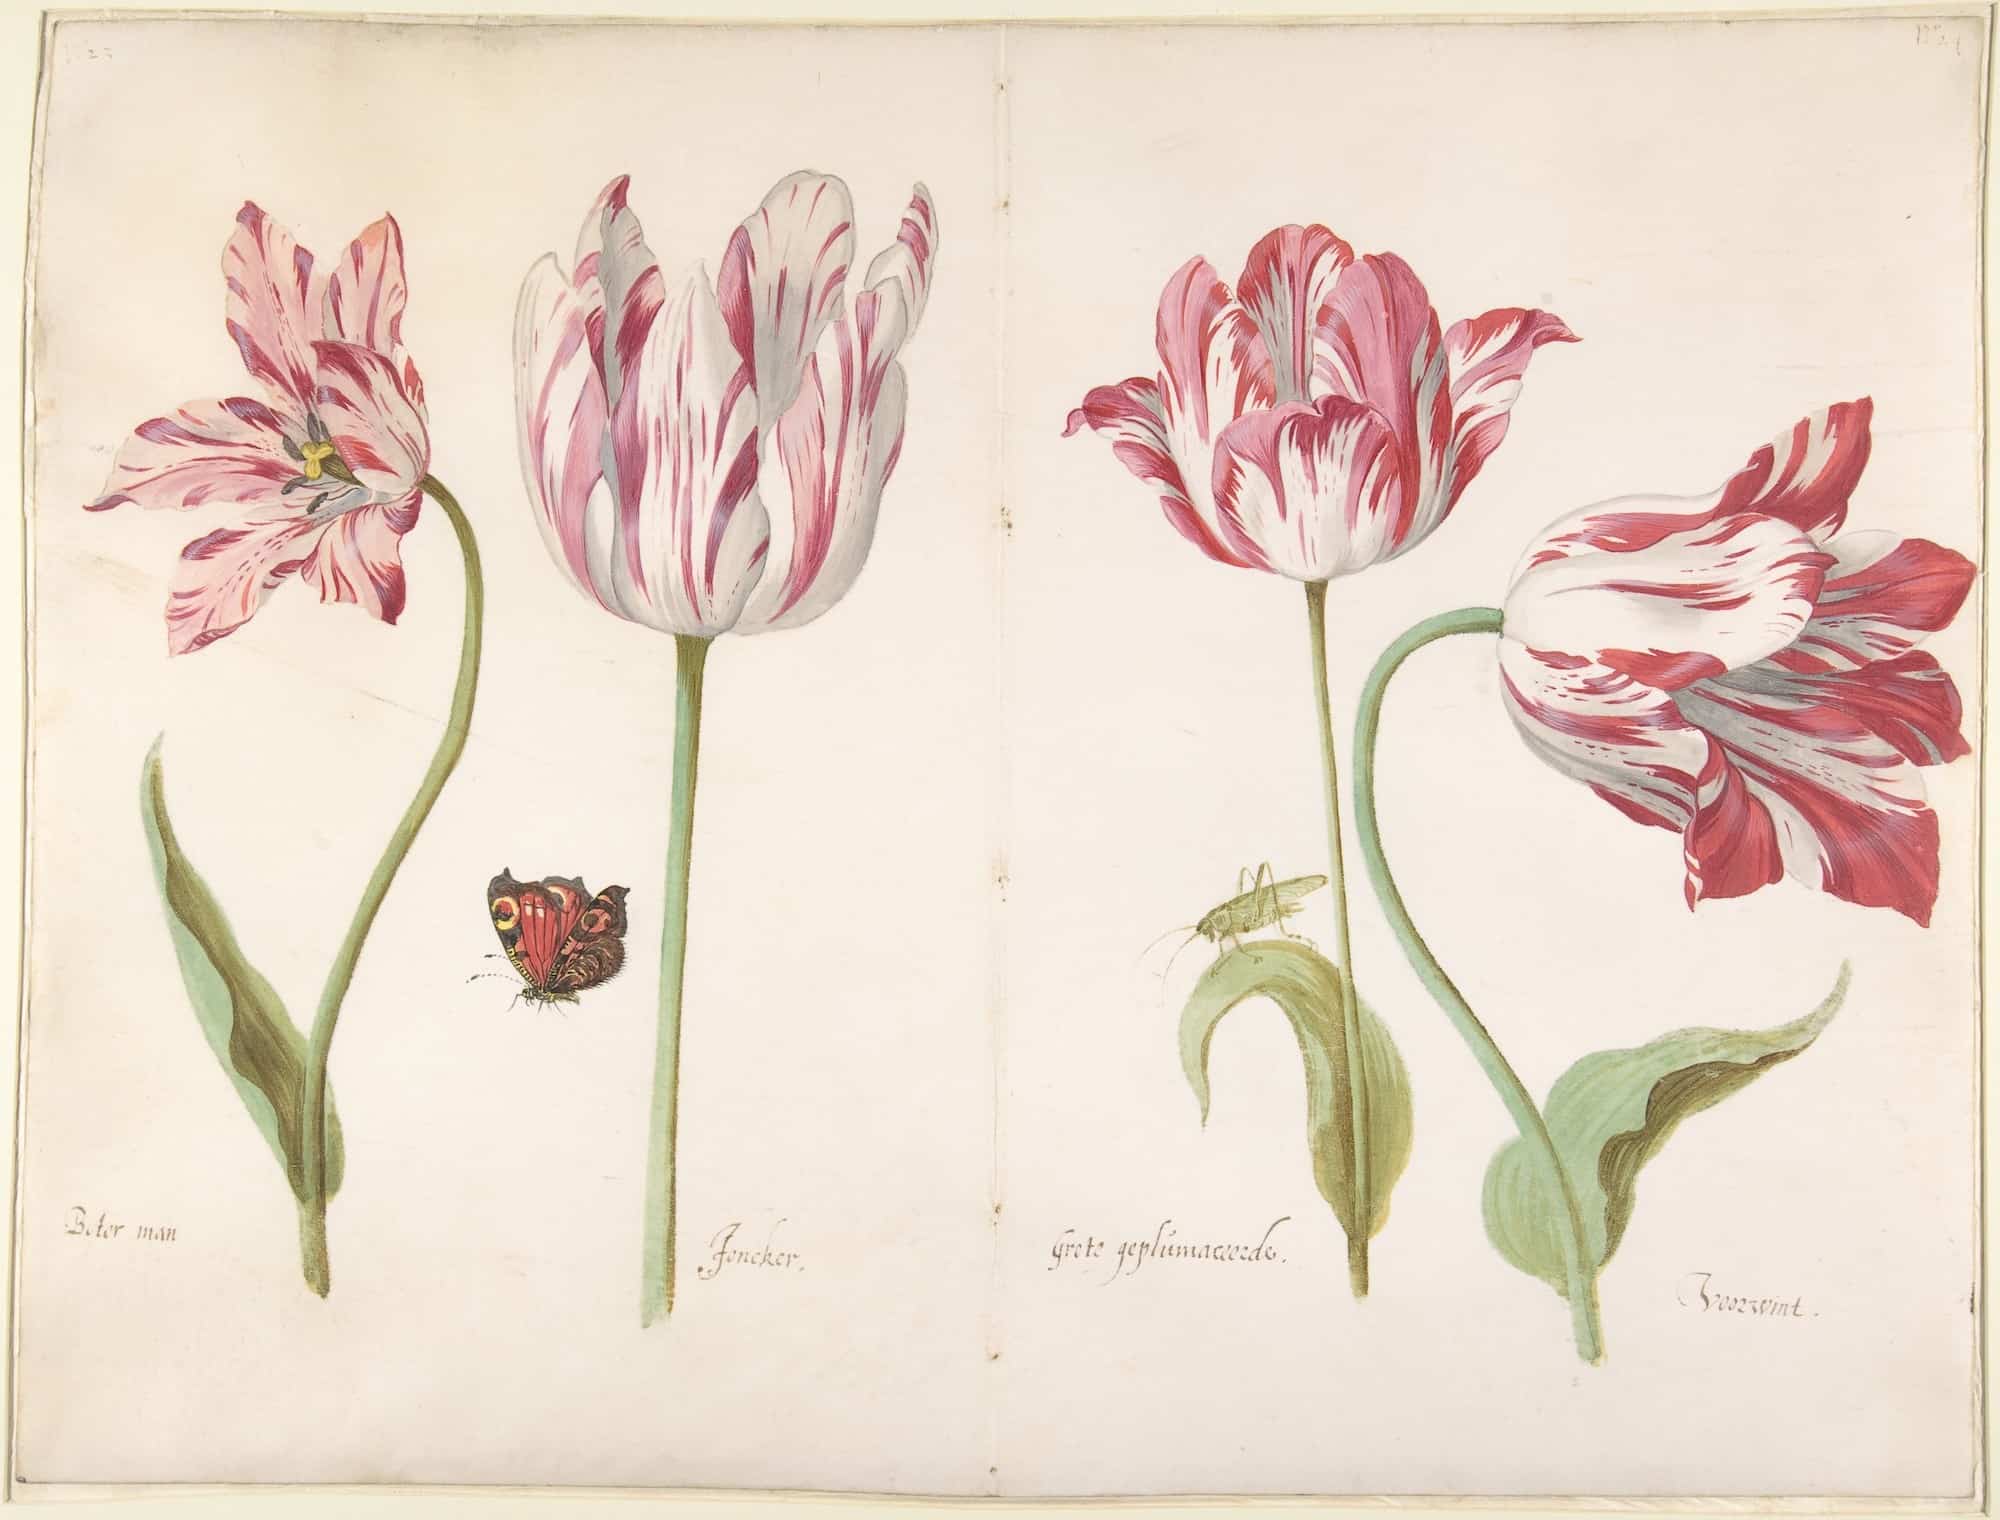 A botanical illustration of tulips